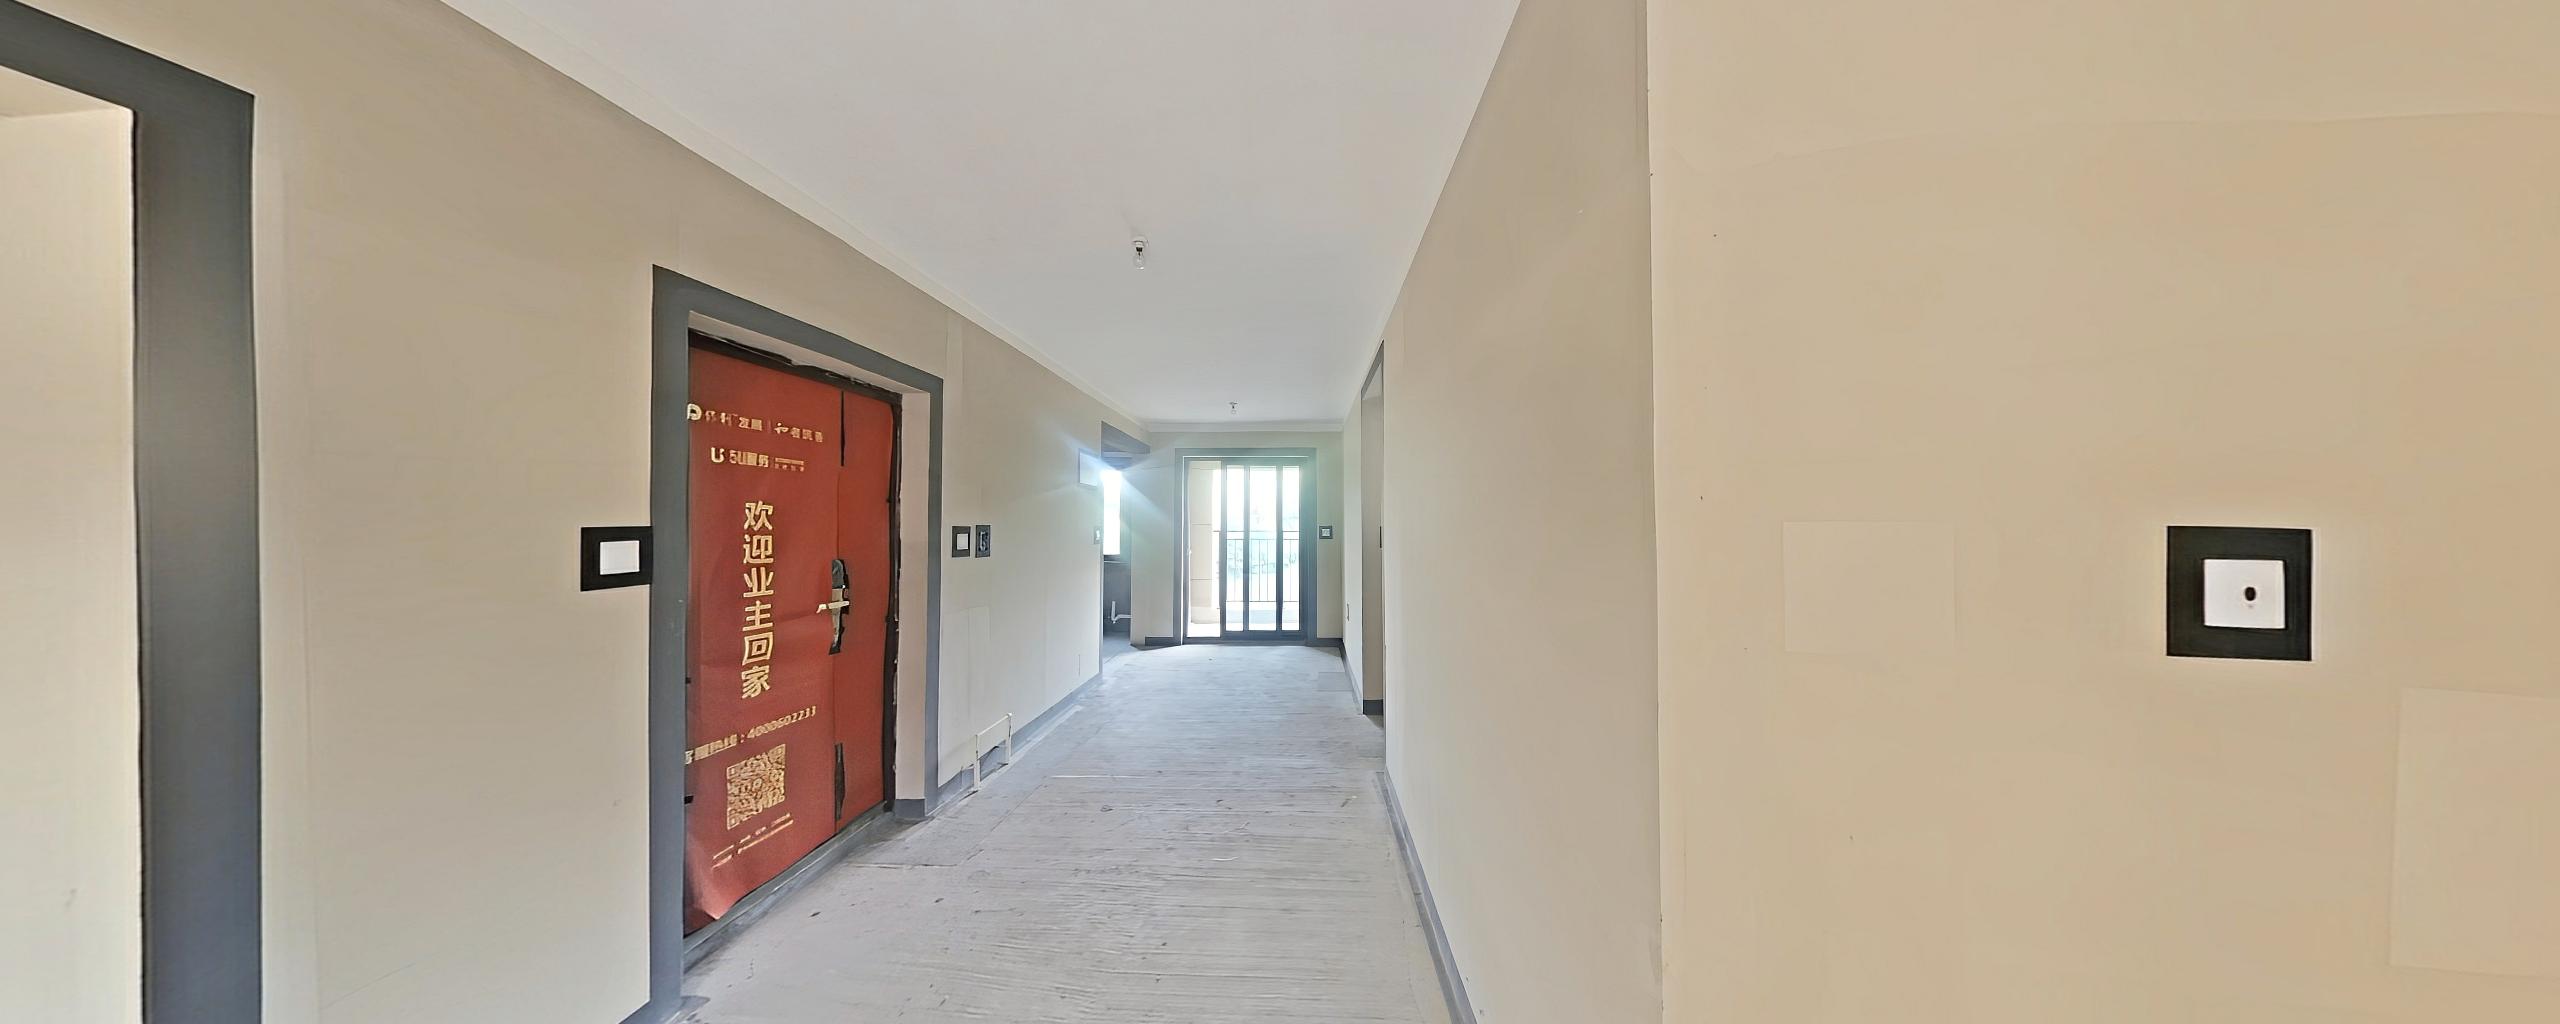 双卫格局 带电梯 钥匙房 次新房 低密度社区 中间楼层-保利林语溪二手房价